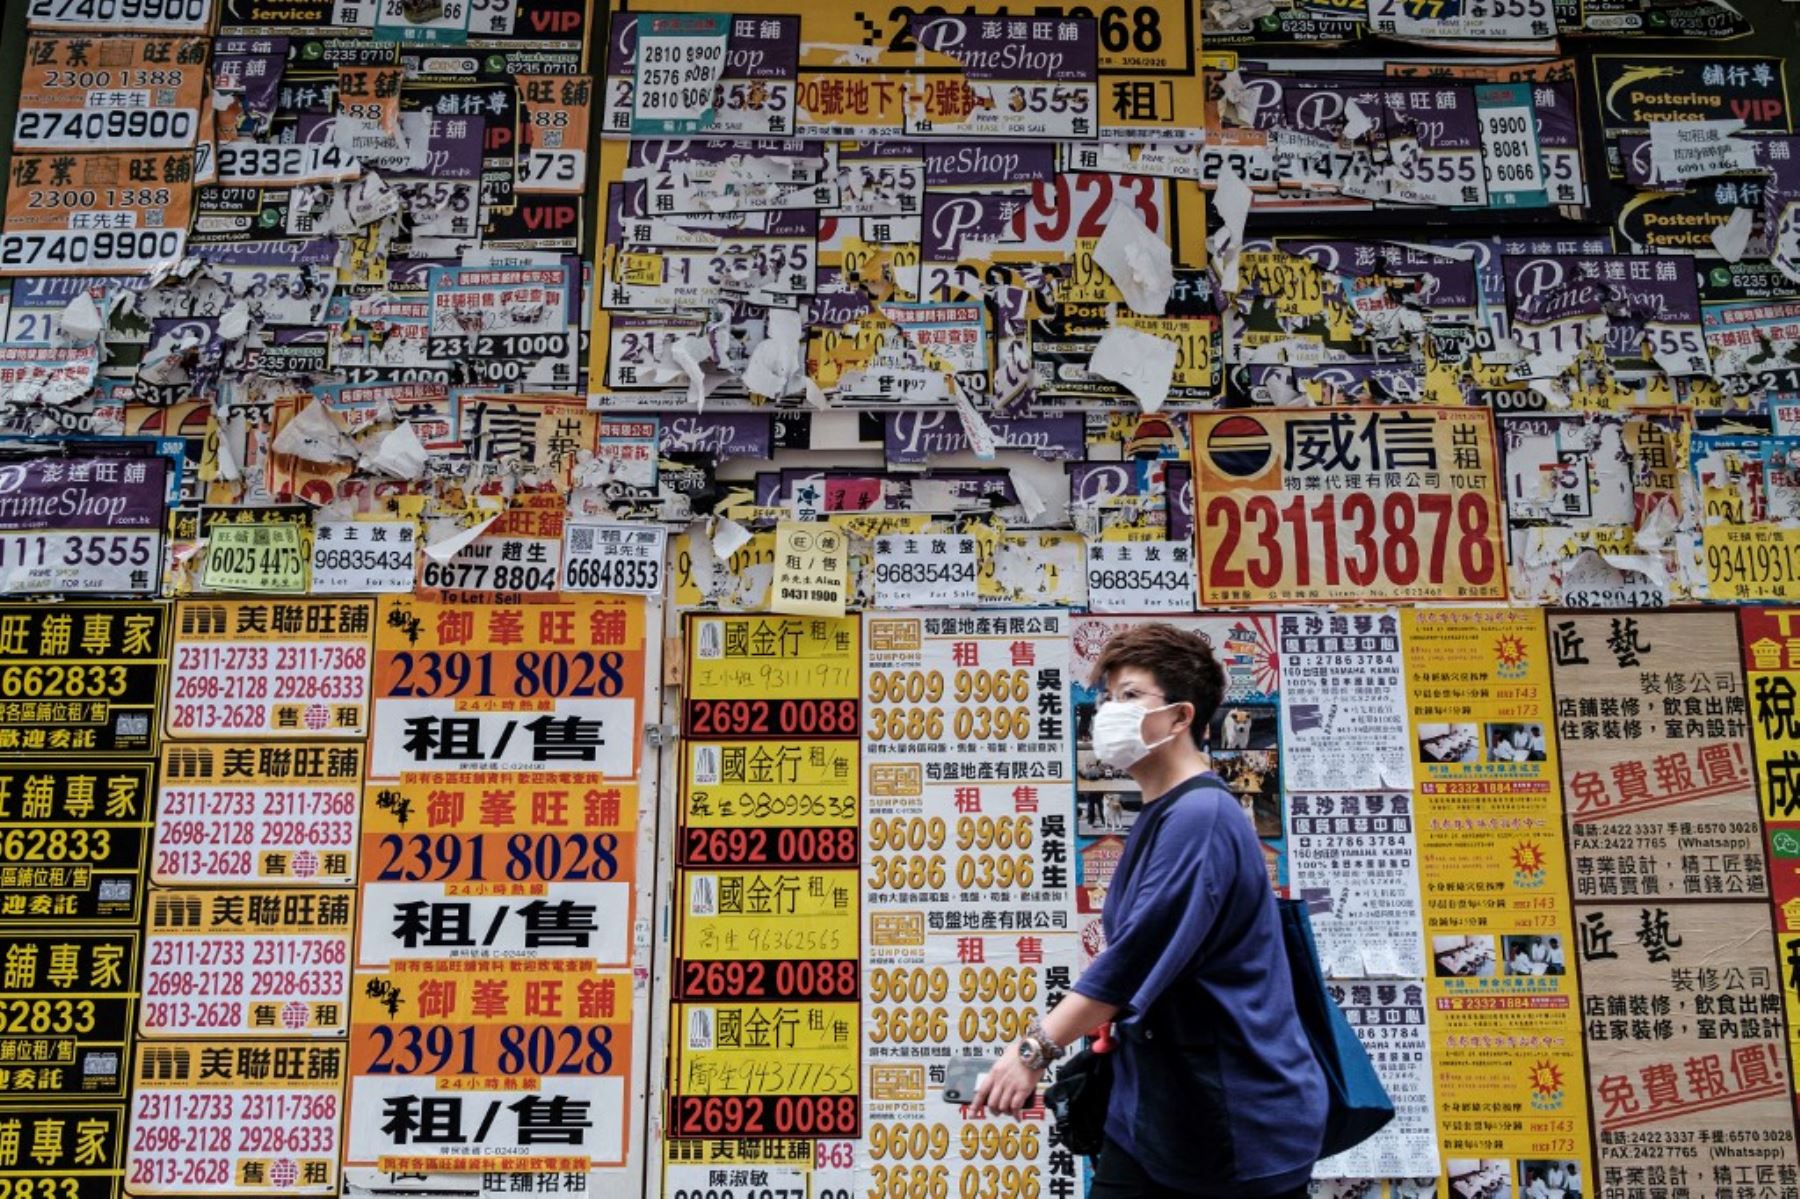 Un peatón camina junto a una tienda cerrada repleta de carteles publicitarios en Hong Kong. Foto: AFP